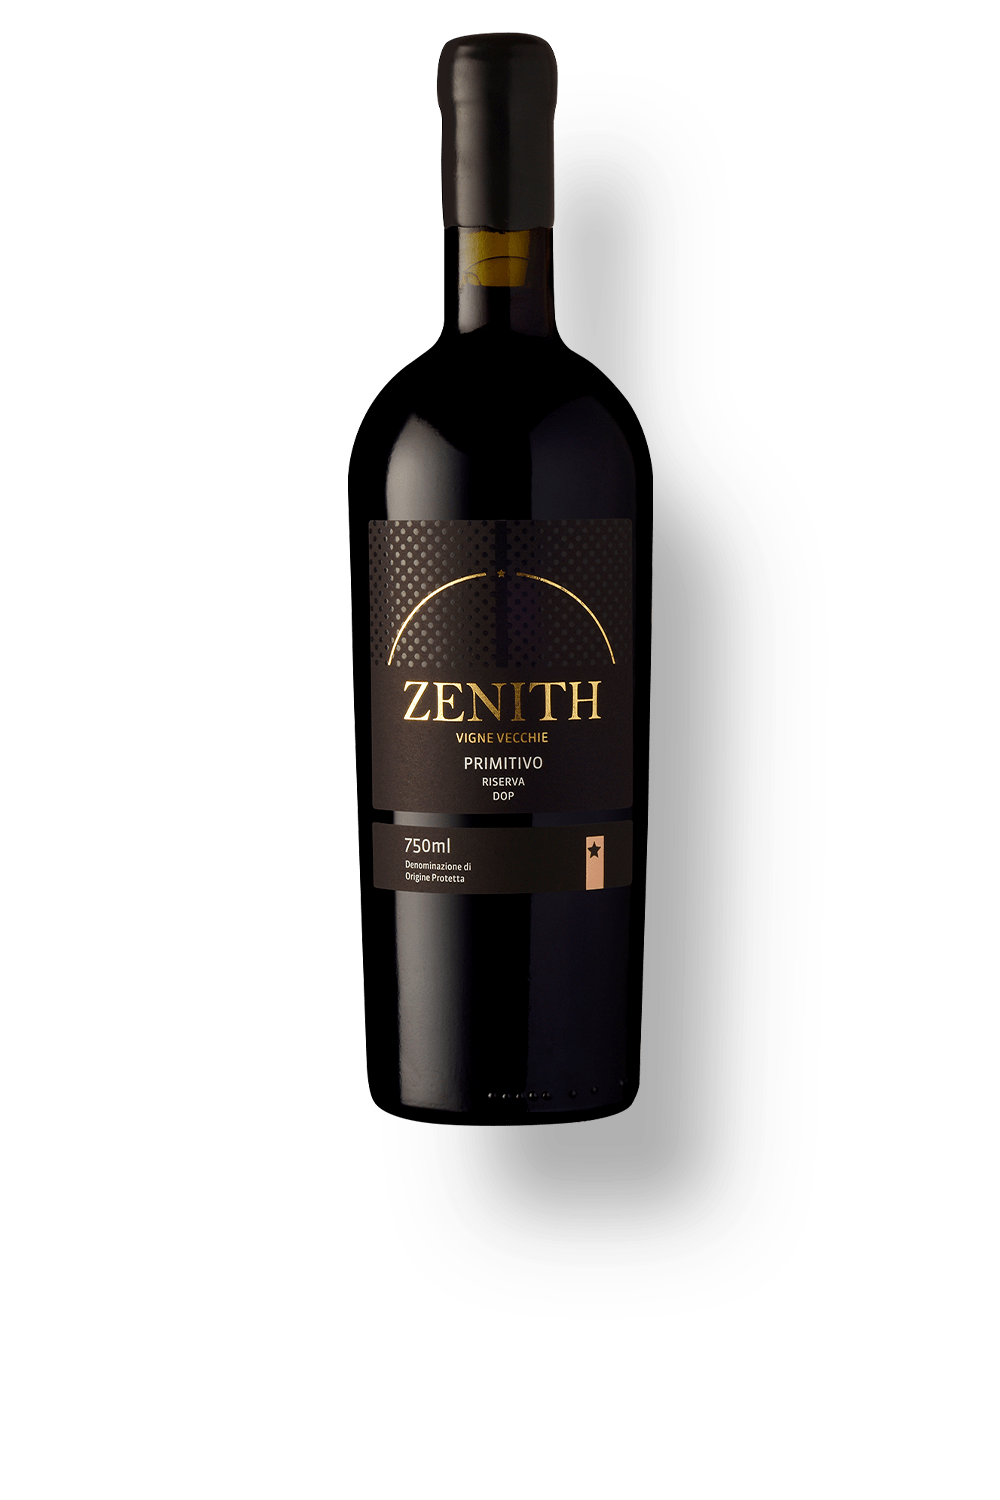 Vinho Zenith Primitivo di Manduria Riserva Vigne Vecchie DOP 750 ml